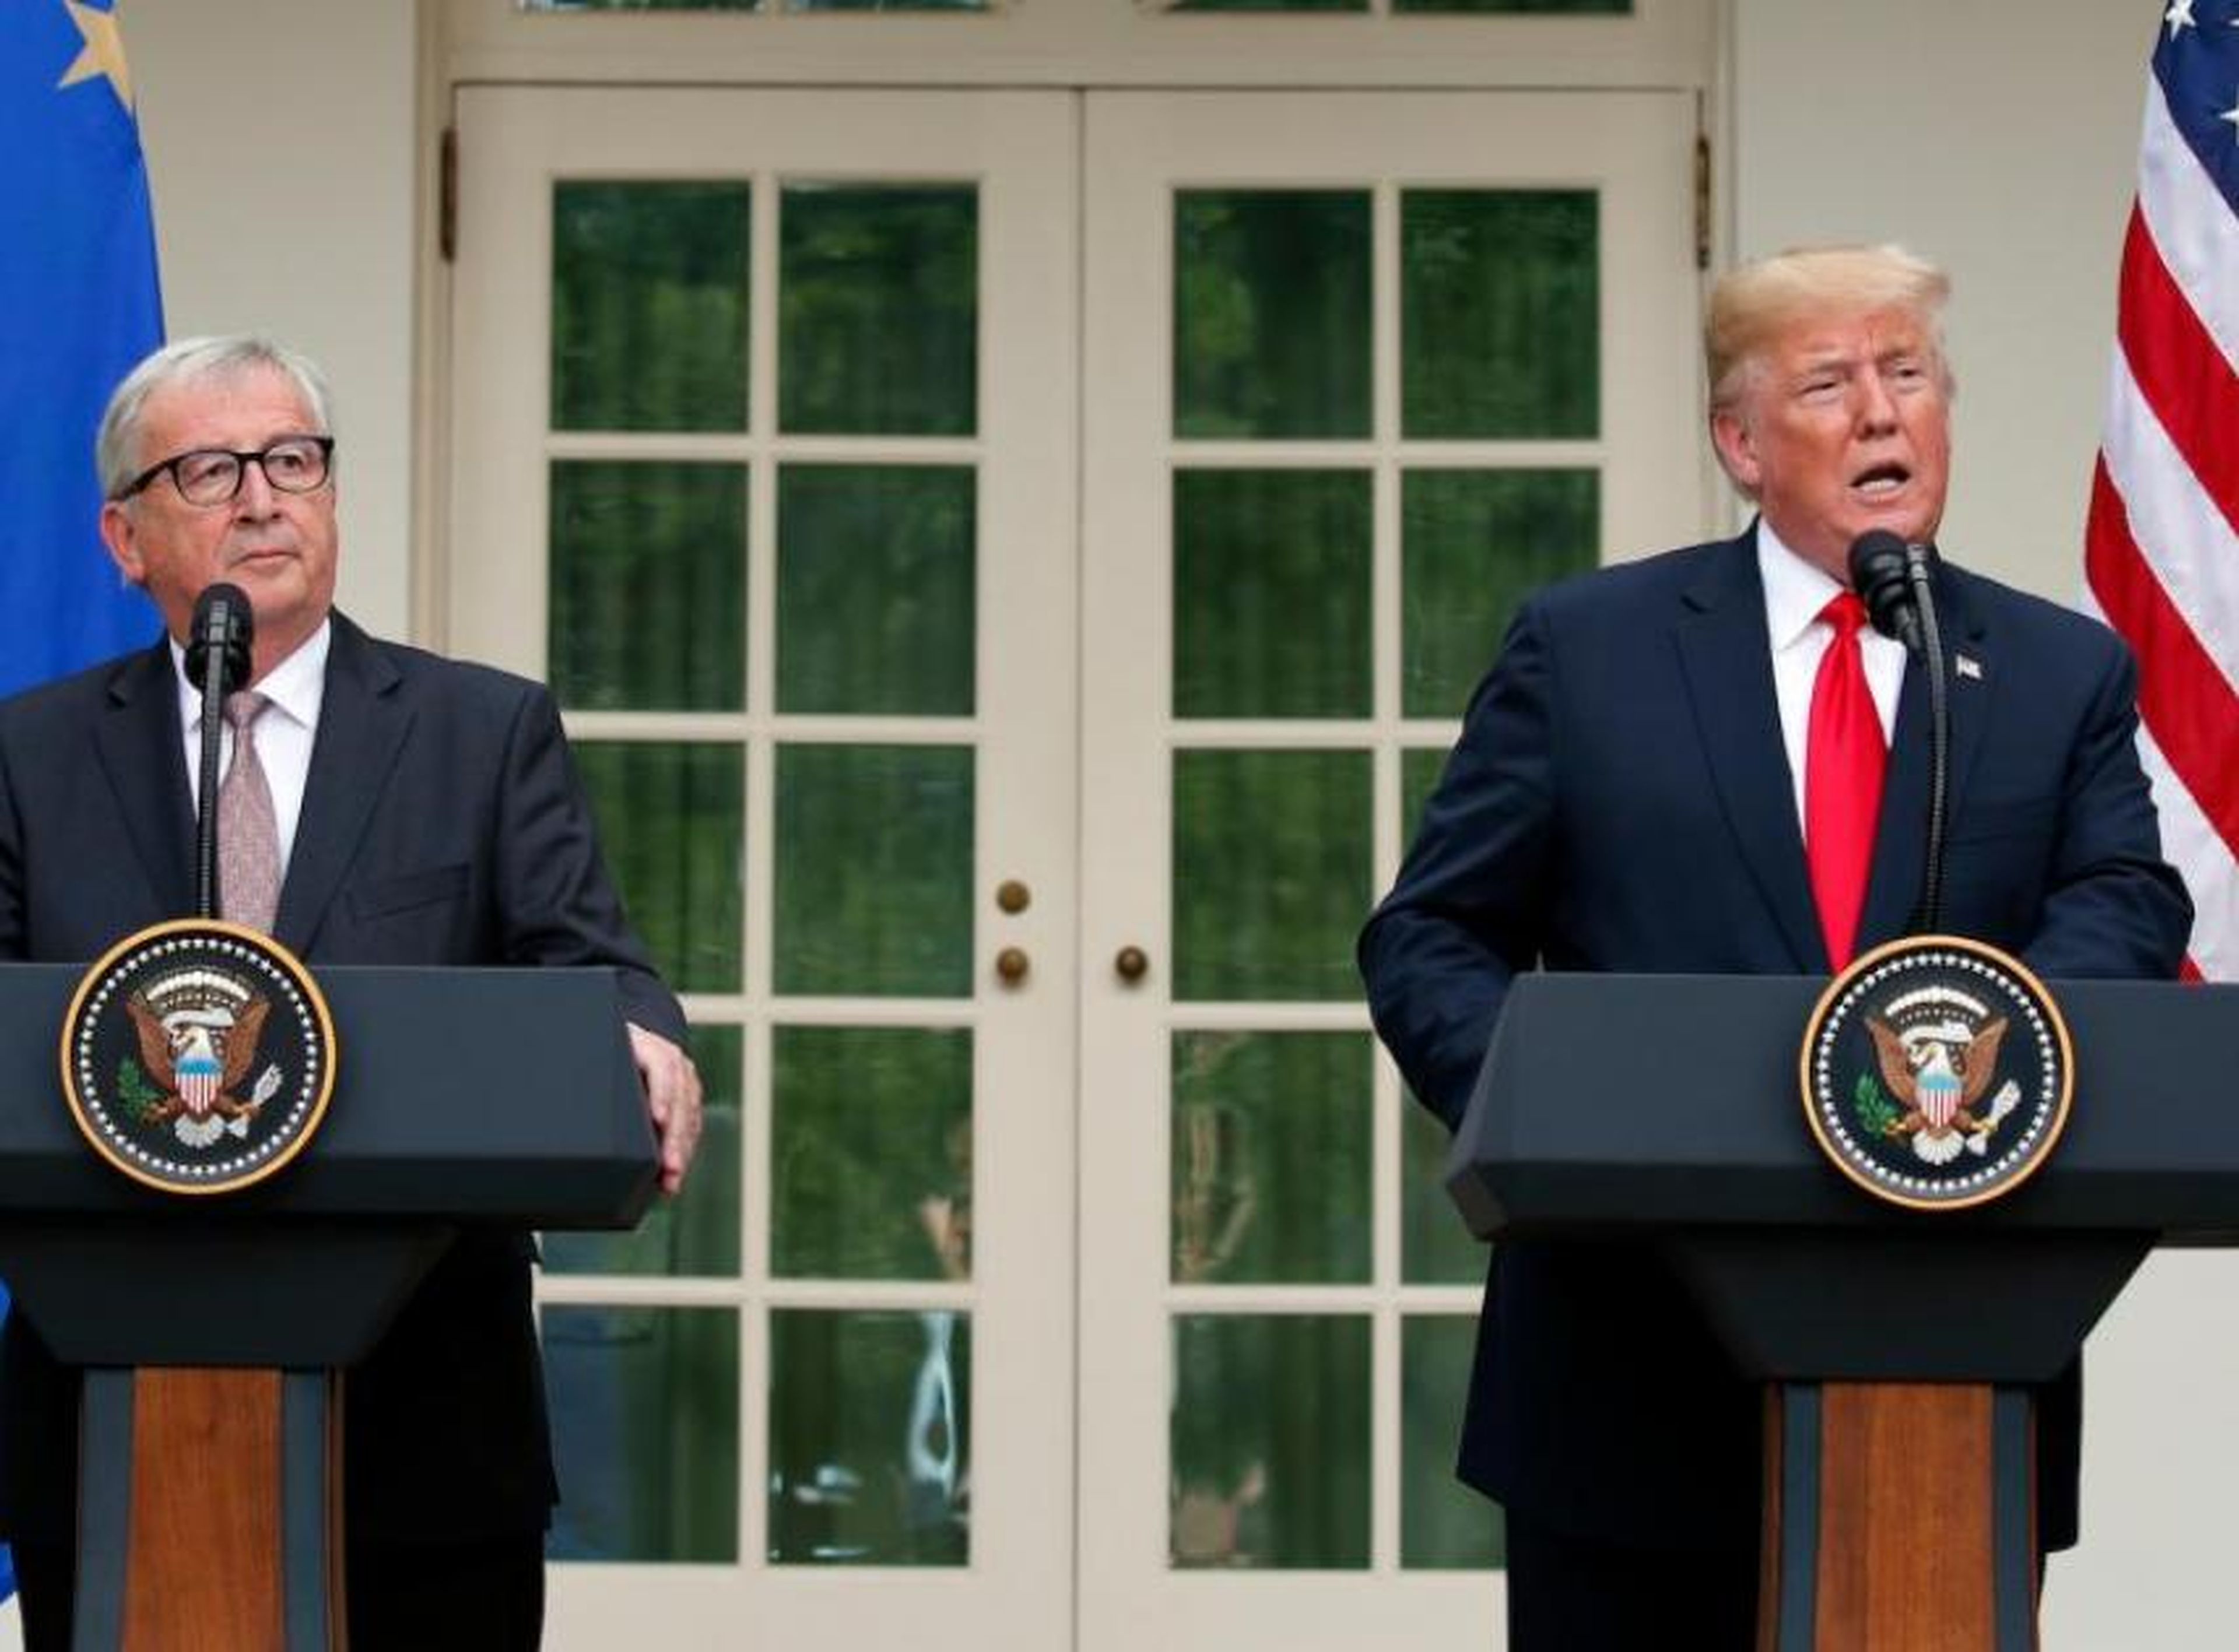 El presidente Donald Trump y el presidente de la Comisión Europea Jean-Claude Juncker hablan en el Rose Garden de la Casa Blanca, el miércoles 25 de julio de 2018 en Washington.